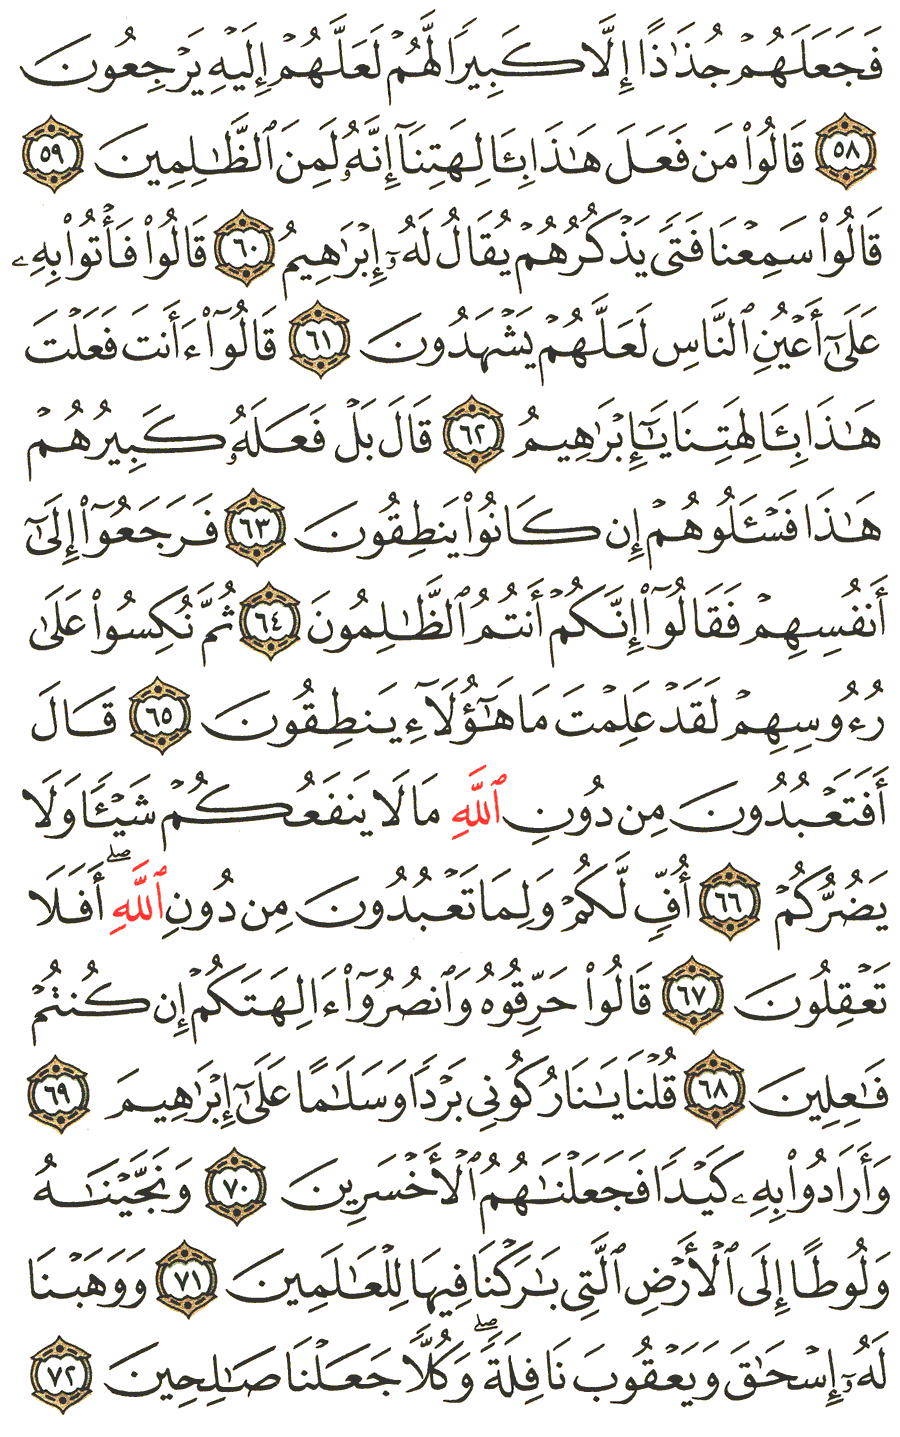 الصفحة رقم 327  من القرآن الكريم مكتوبة من المصحف